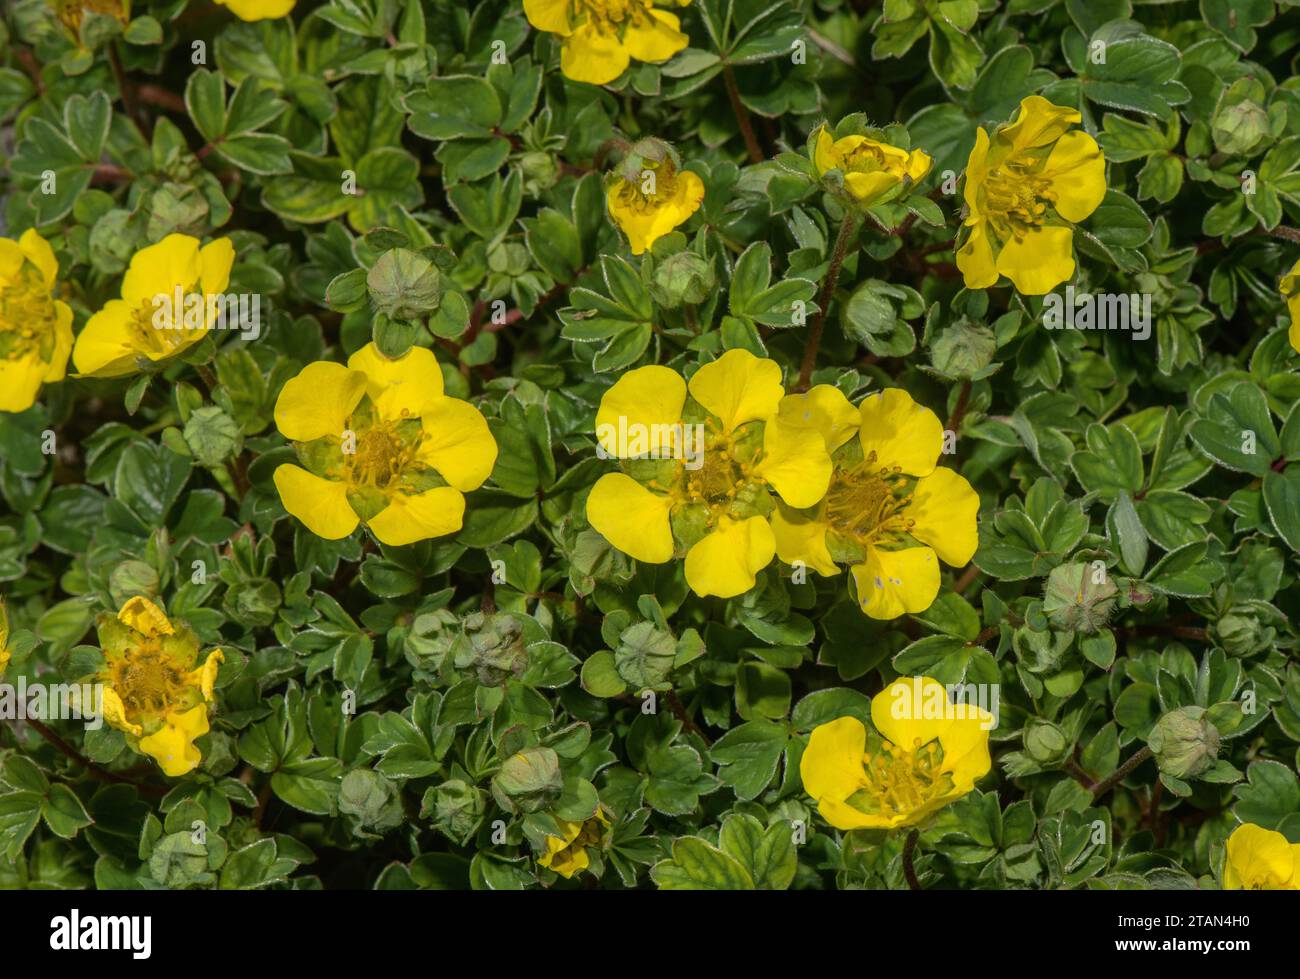 Potentilla ambigua in flower. Stock Photo